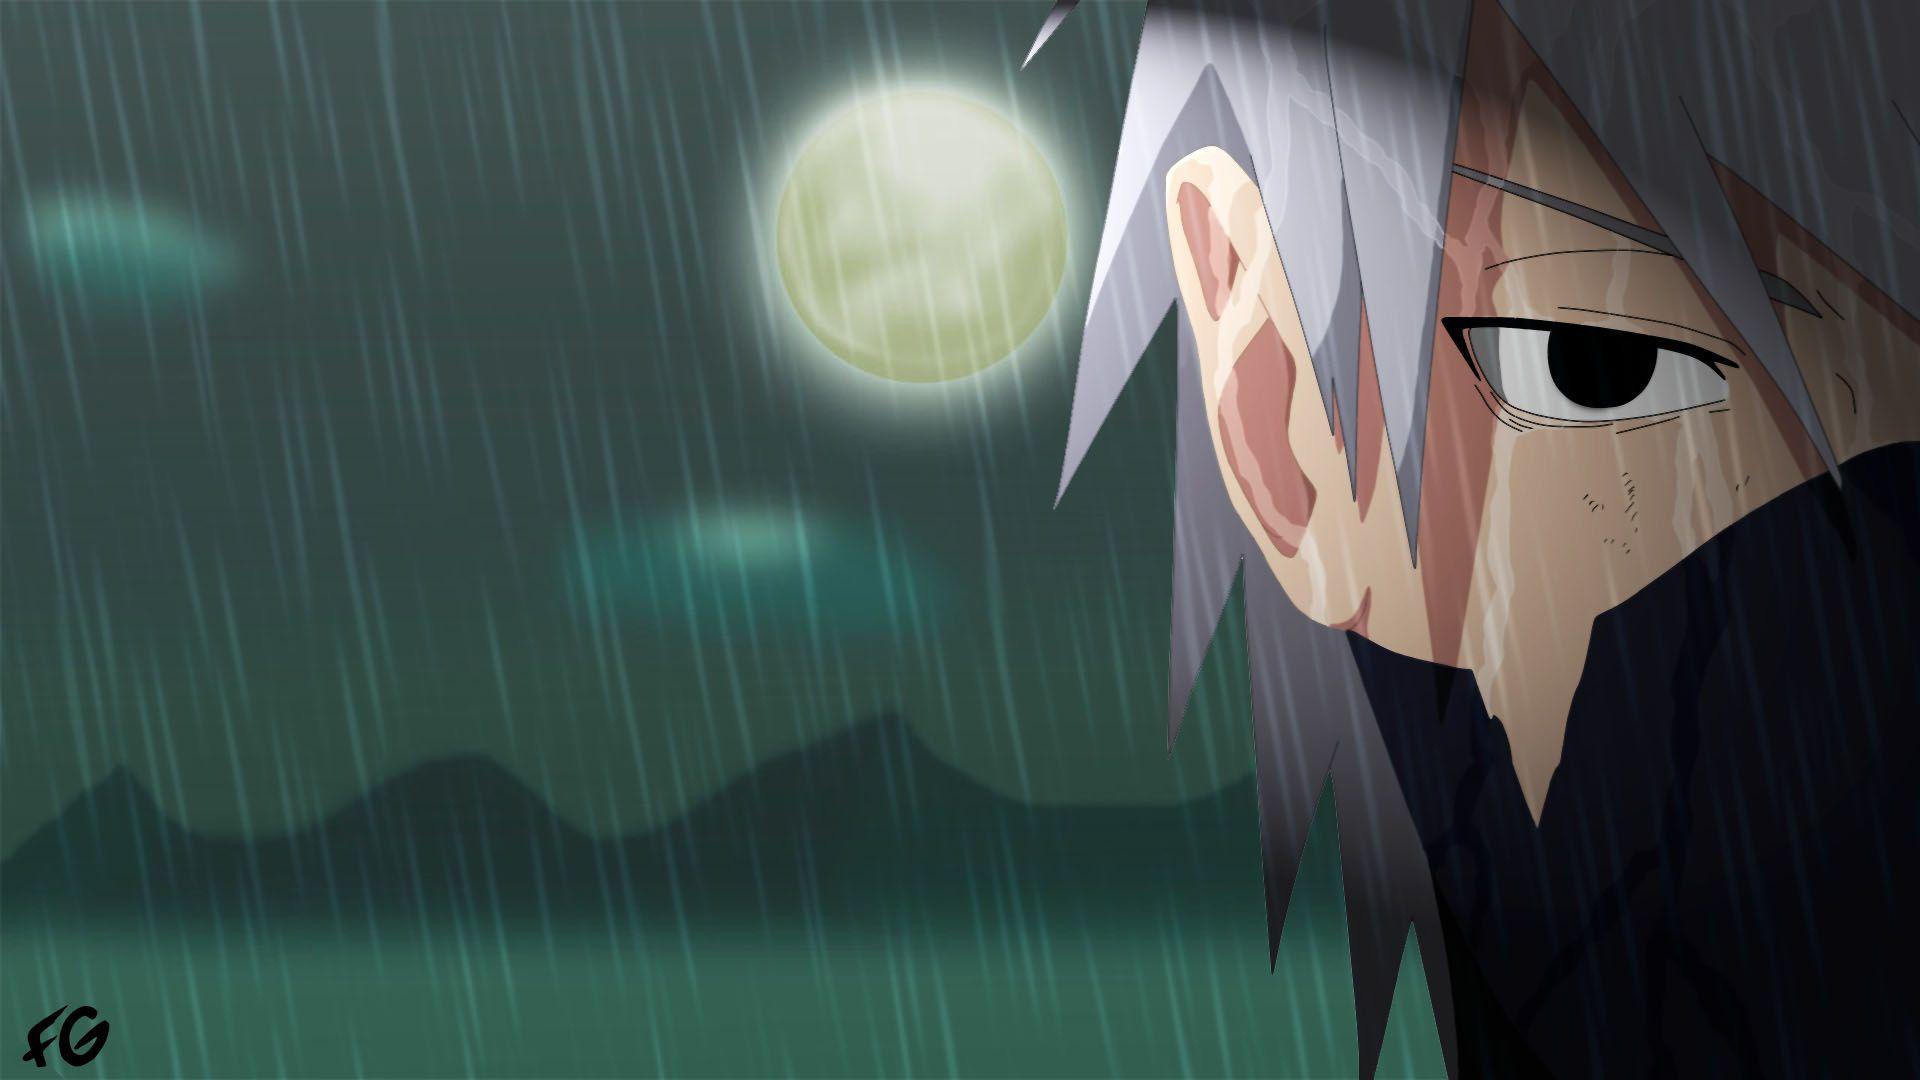 Hãy cùng chiêm ngưỡng hình ảnh Kakashi trong tâm trạng buồn cô đơn. Dù là một nhân vật mạnh mẽ và uy nghi trong thế giới Naruto, nhưng cũng đôi khi họ cũng cảm thấy bất hạnh và cô đơn. Hãy để chúng ta đồng cảm và cùng nhìn nhận tâm trạng của Kakashi.